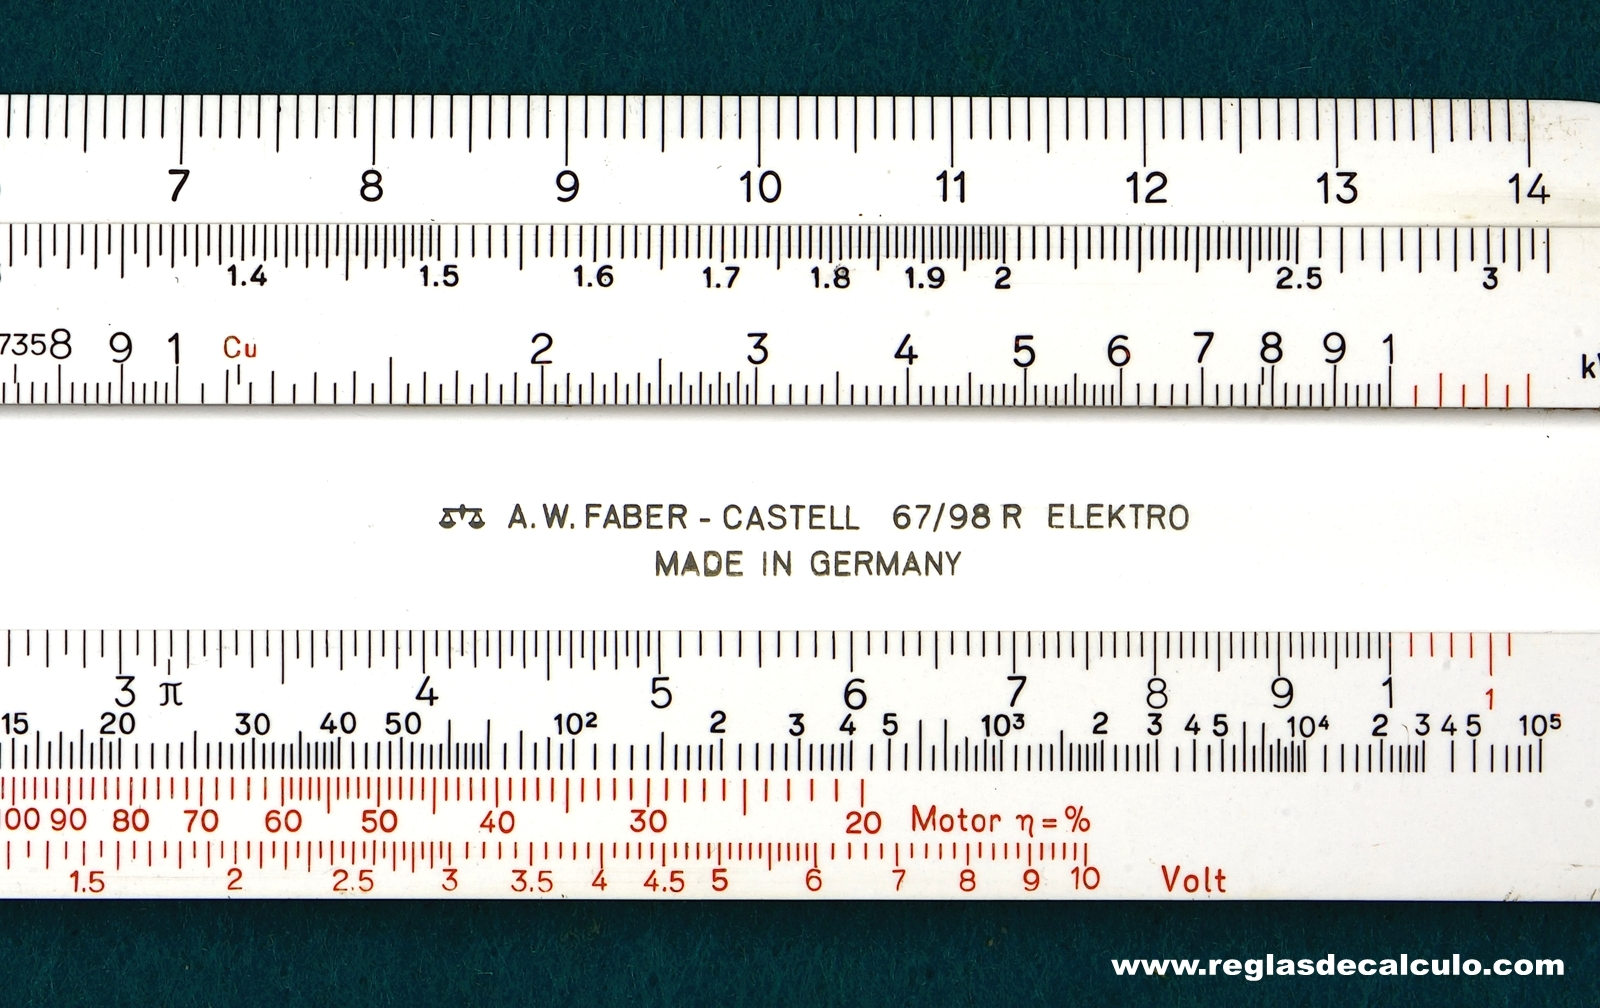 Faber Castell 67/98r Addiator Regla de Calculo Slide rule